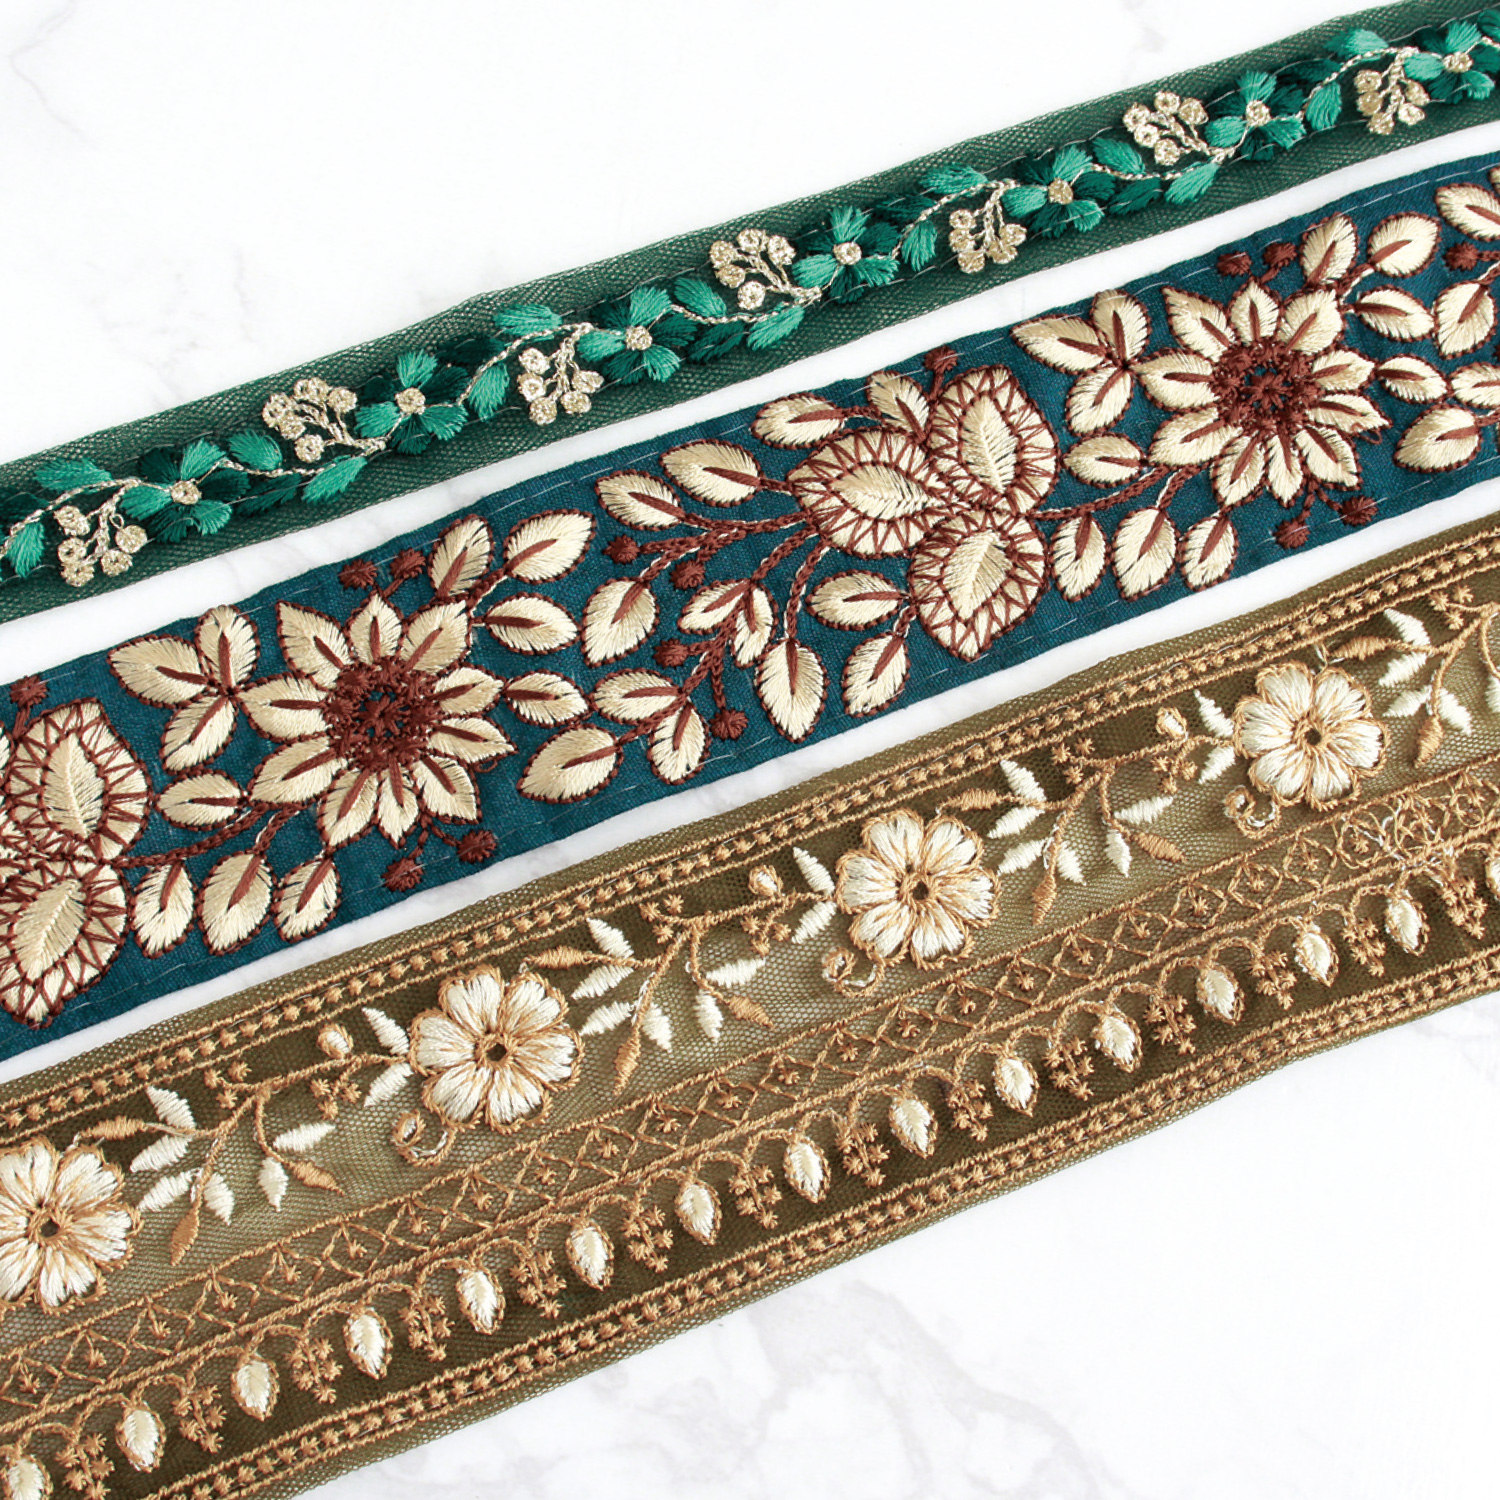 インド刺繍リボンアソートセット「手芸材料の卸売りサイトChuko Online」